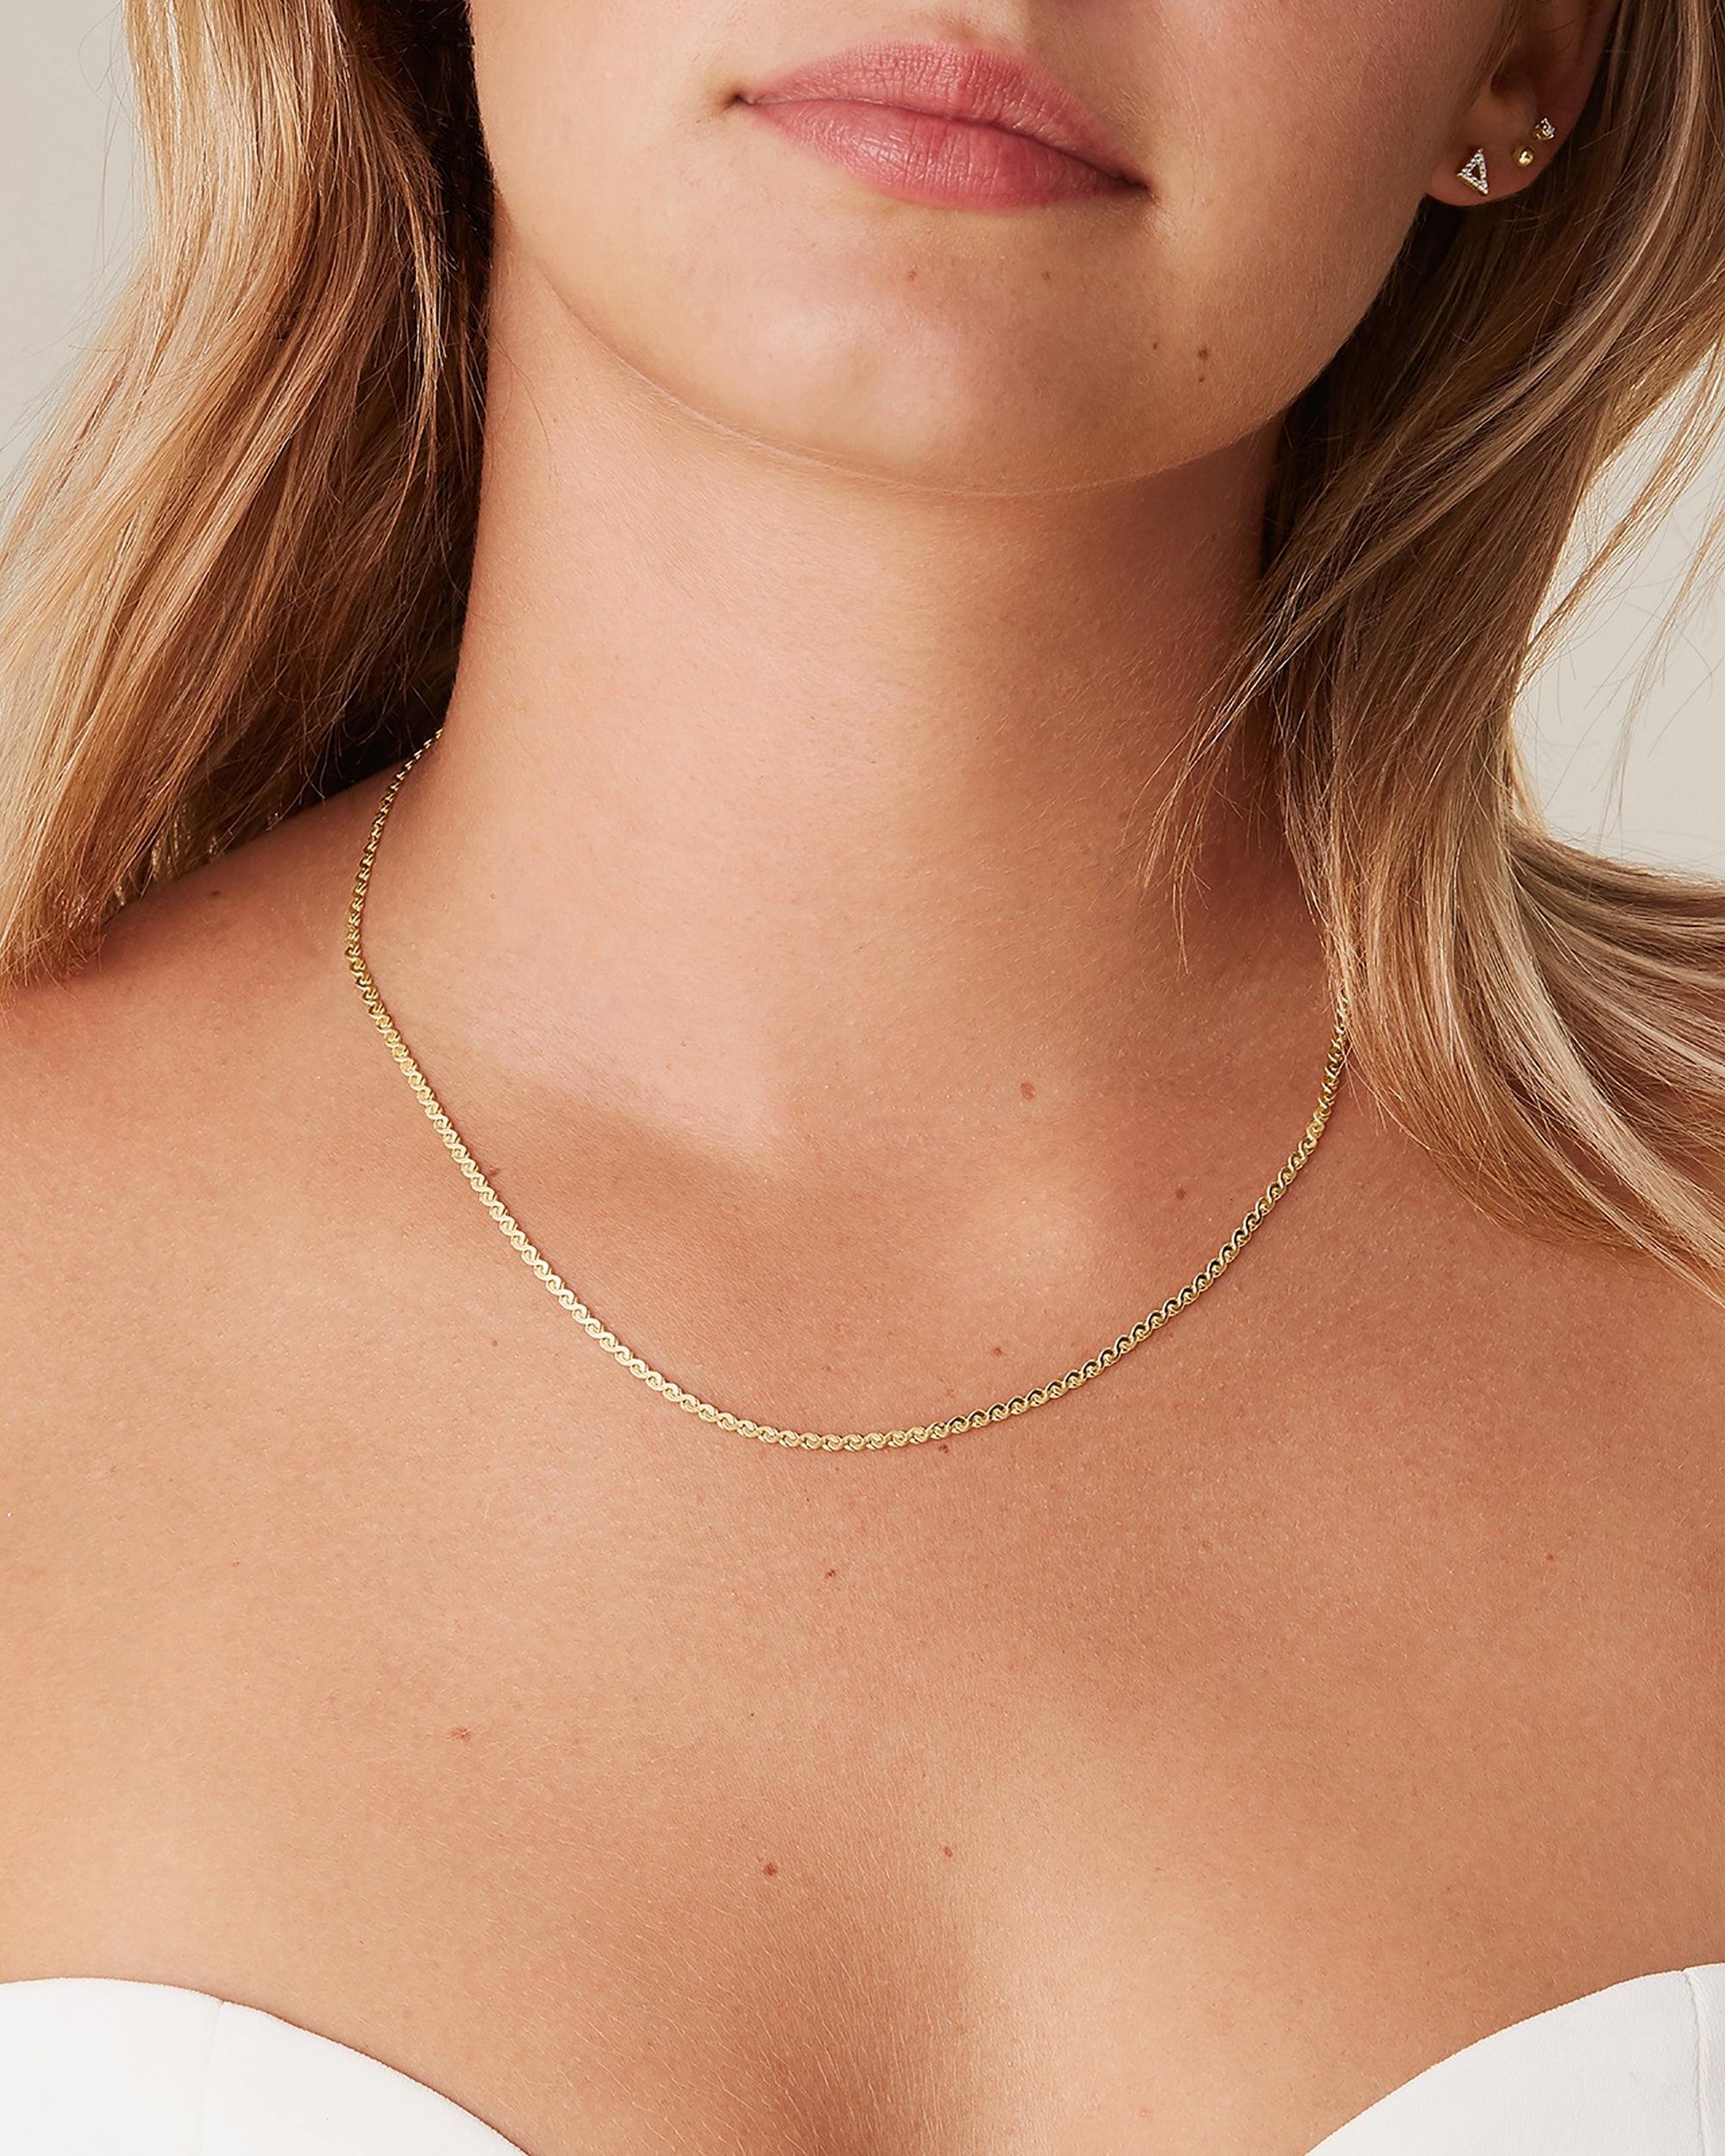 Vintage 14K Gold Serpentine Chain Necklace, Unisex – Boylerpf